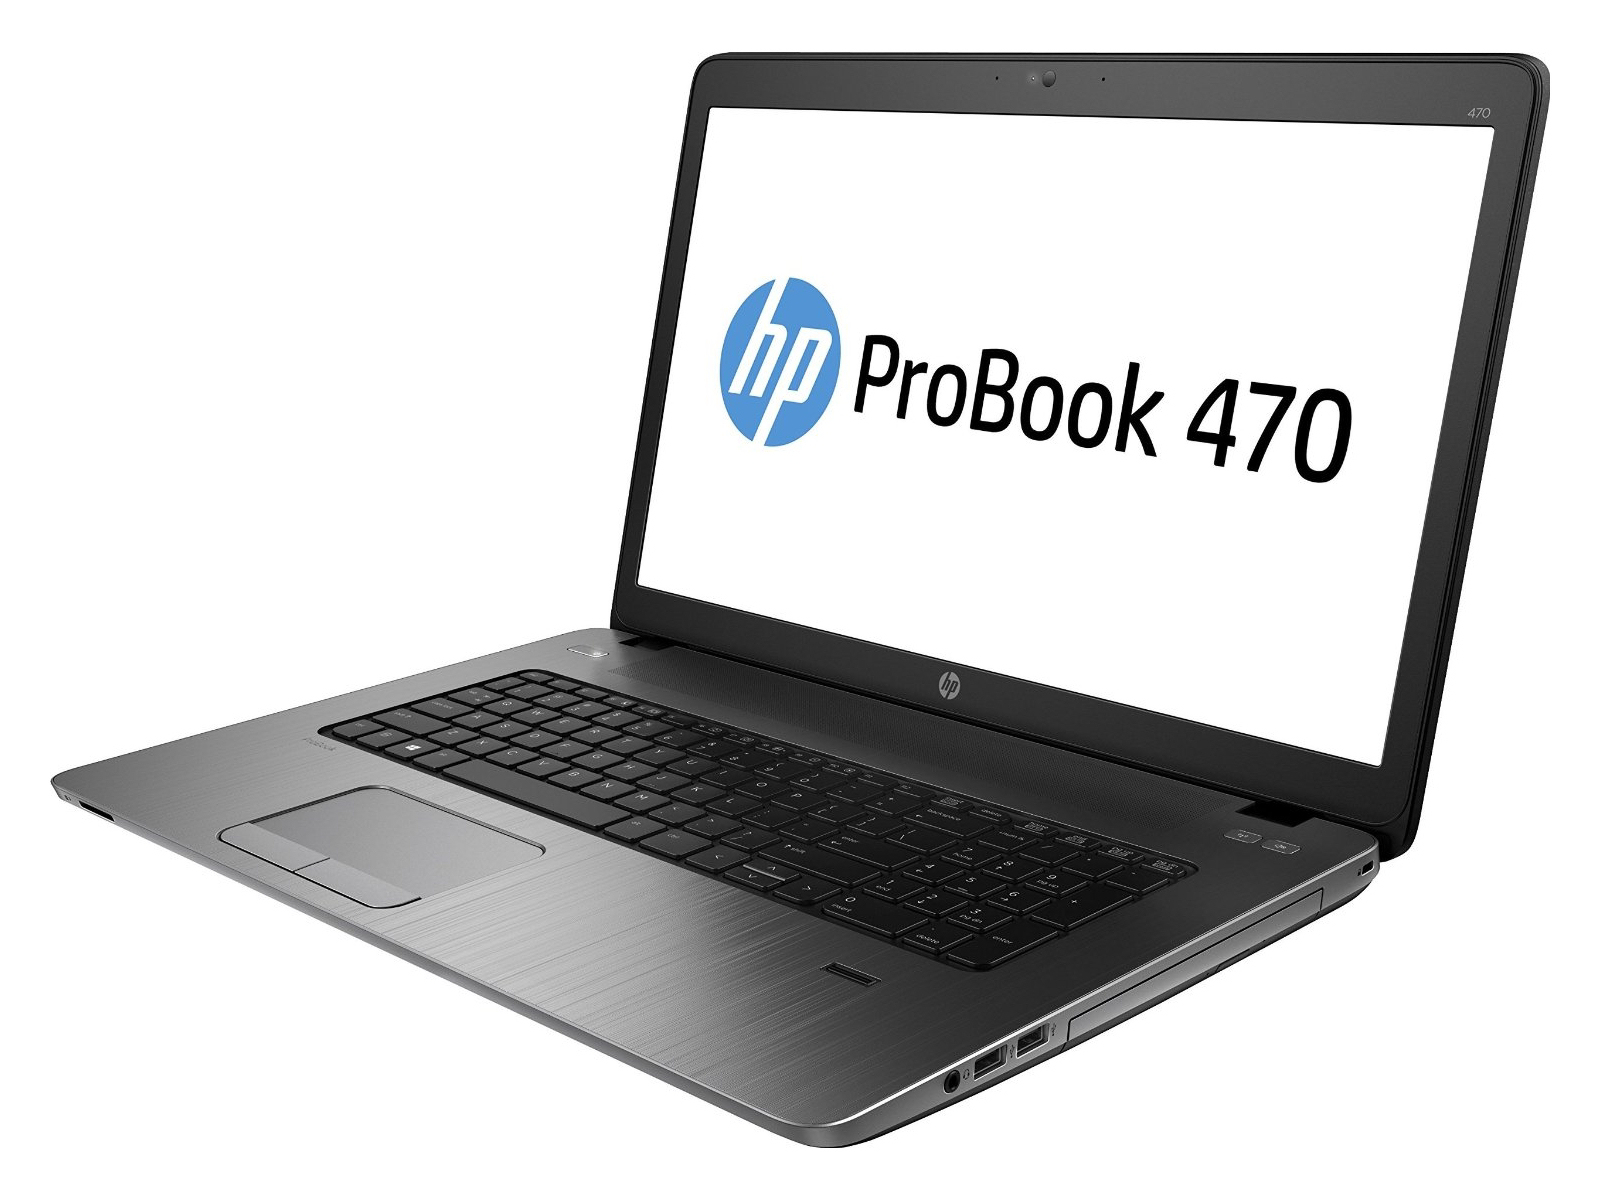 HP ProBook 470 G2 Notebook Review - NotebookCheck.net Reviews